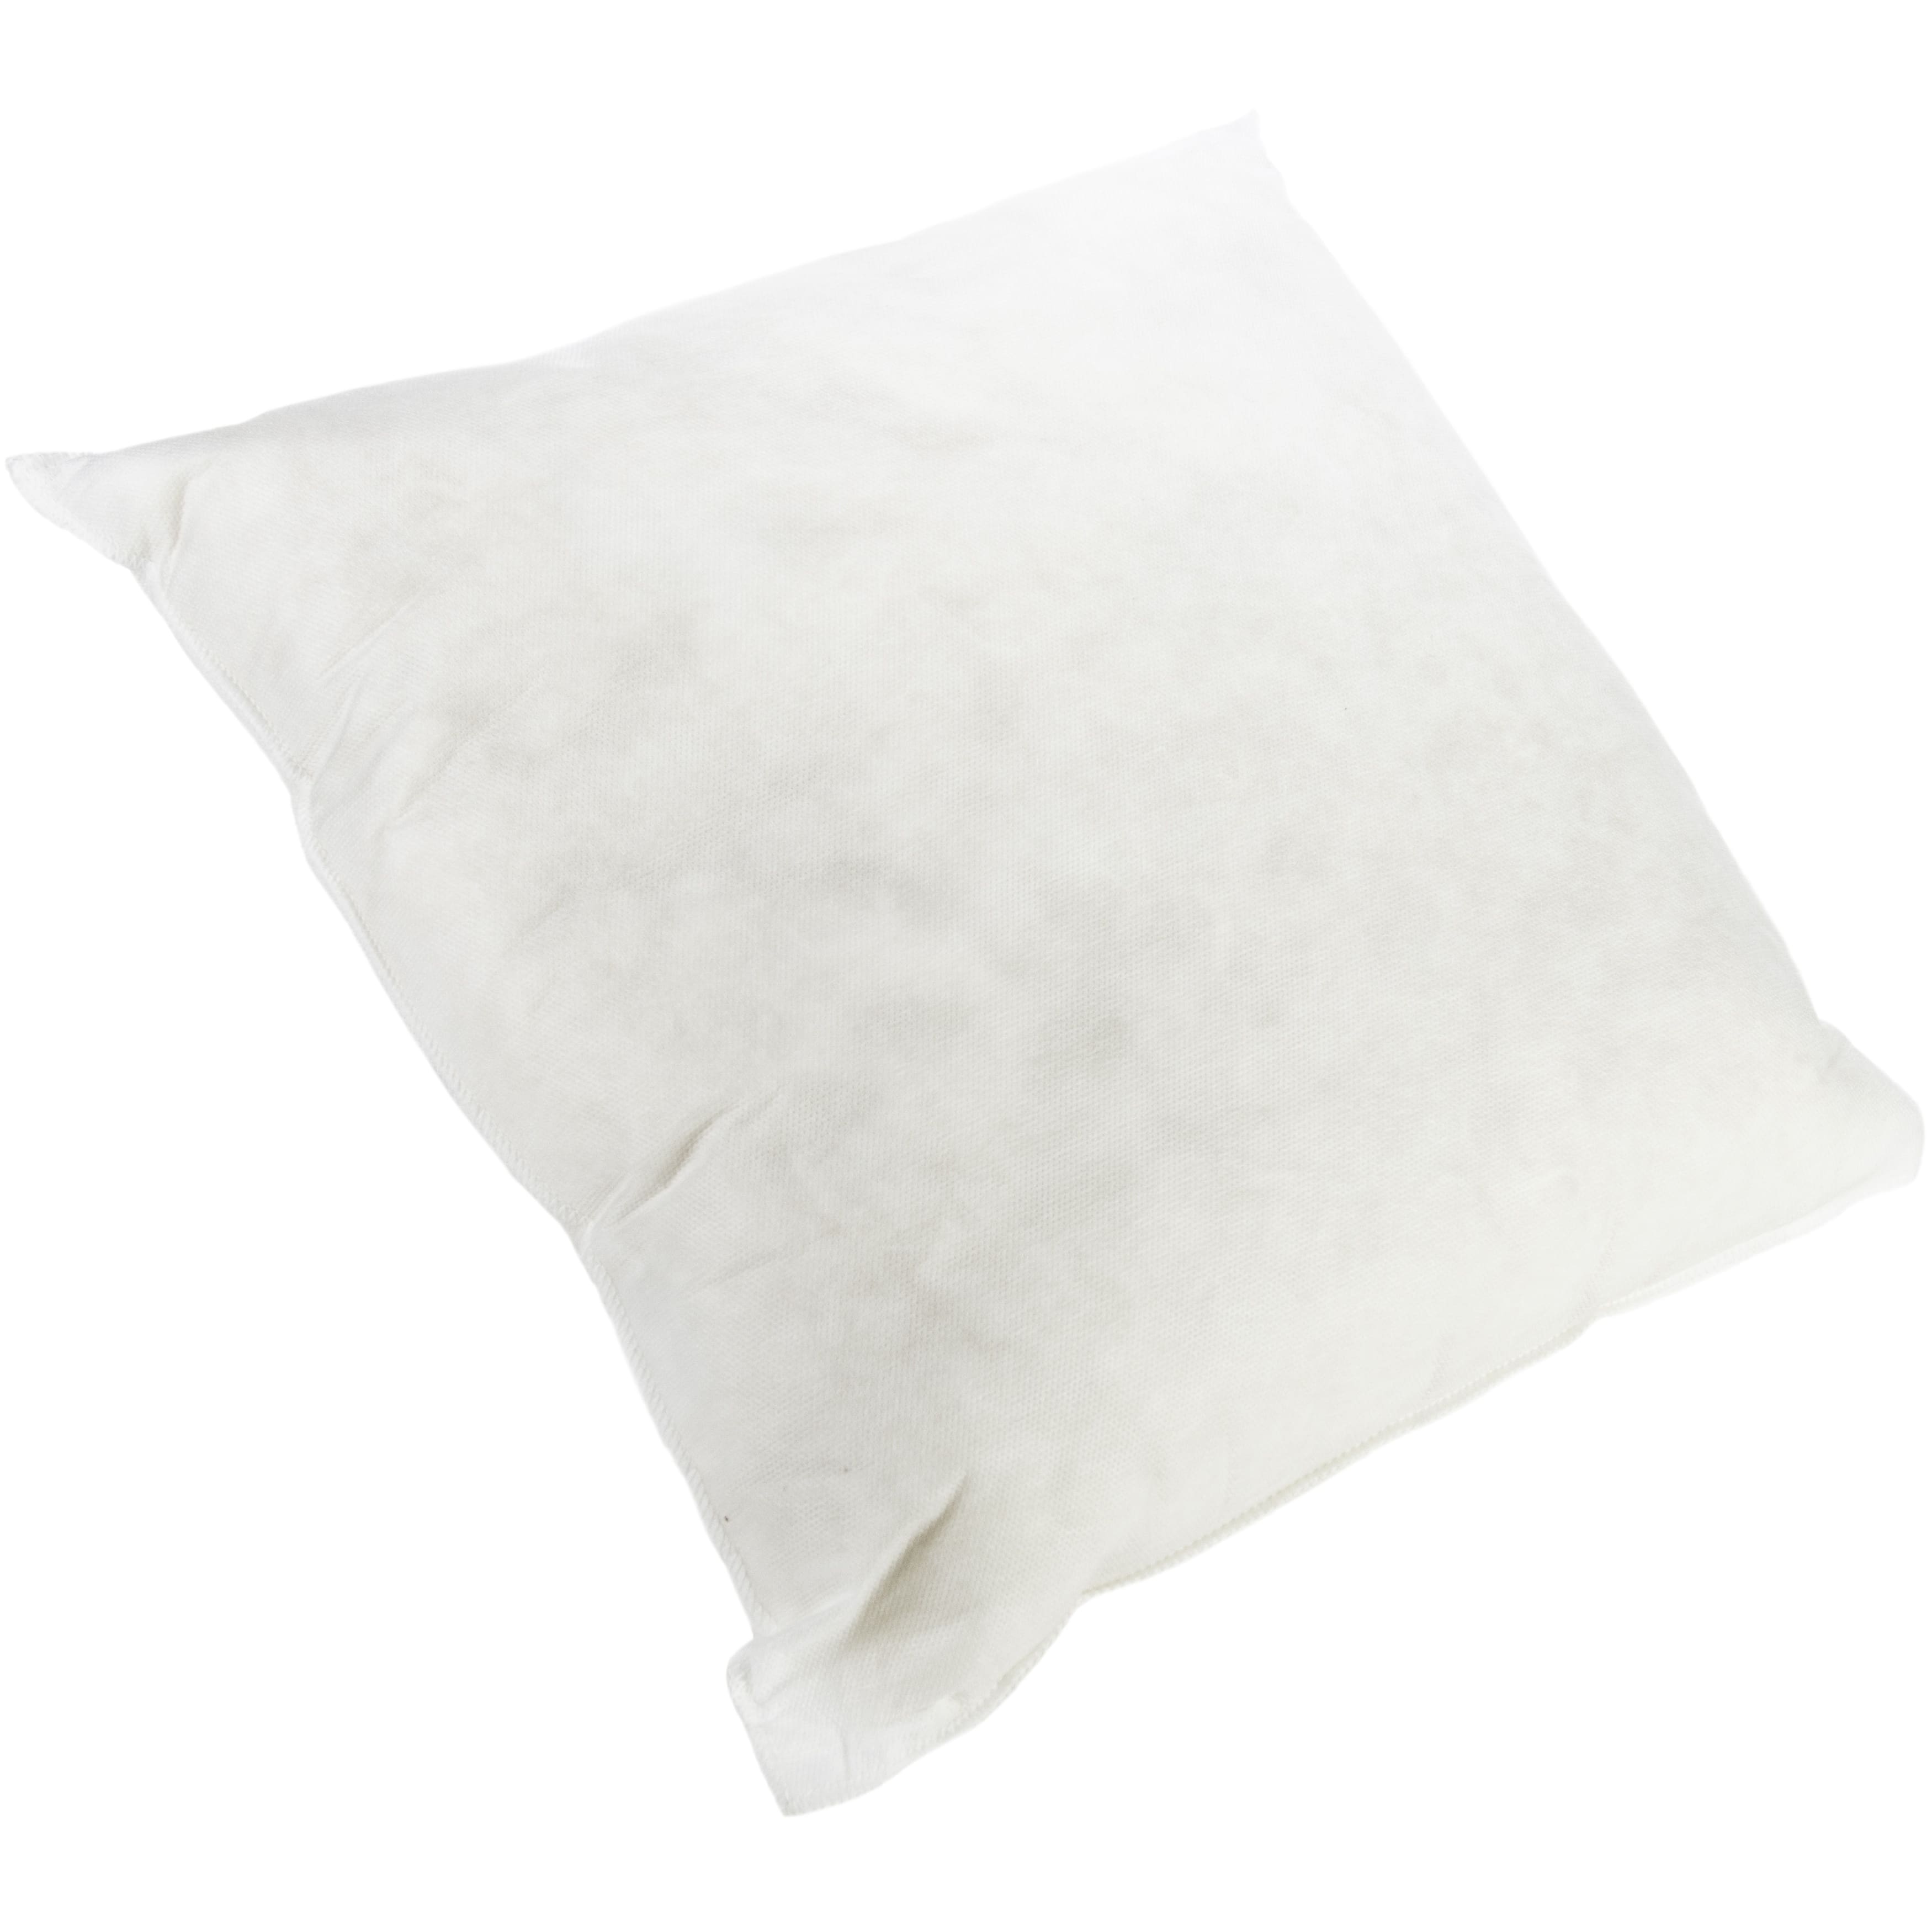 Bosal Pillow Insert